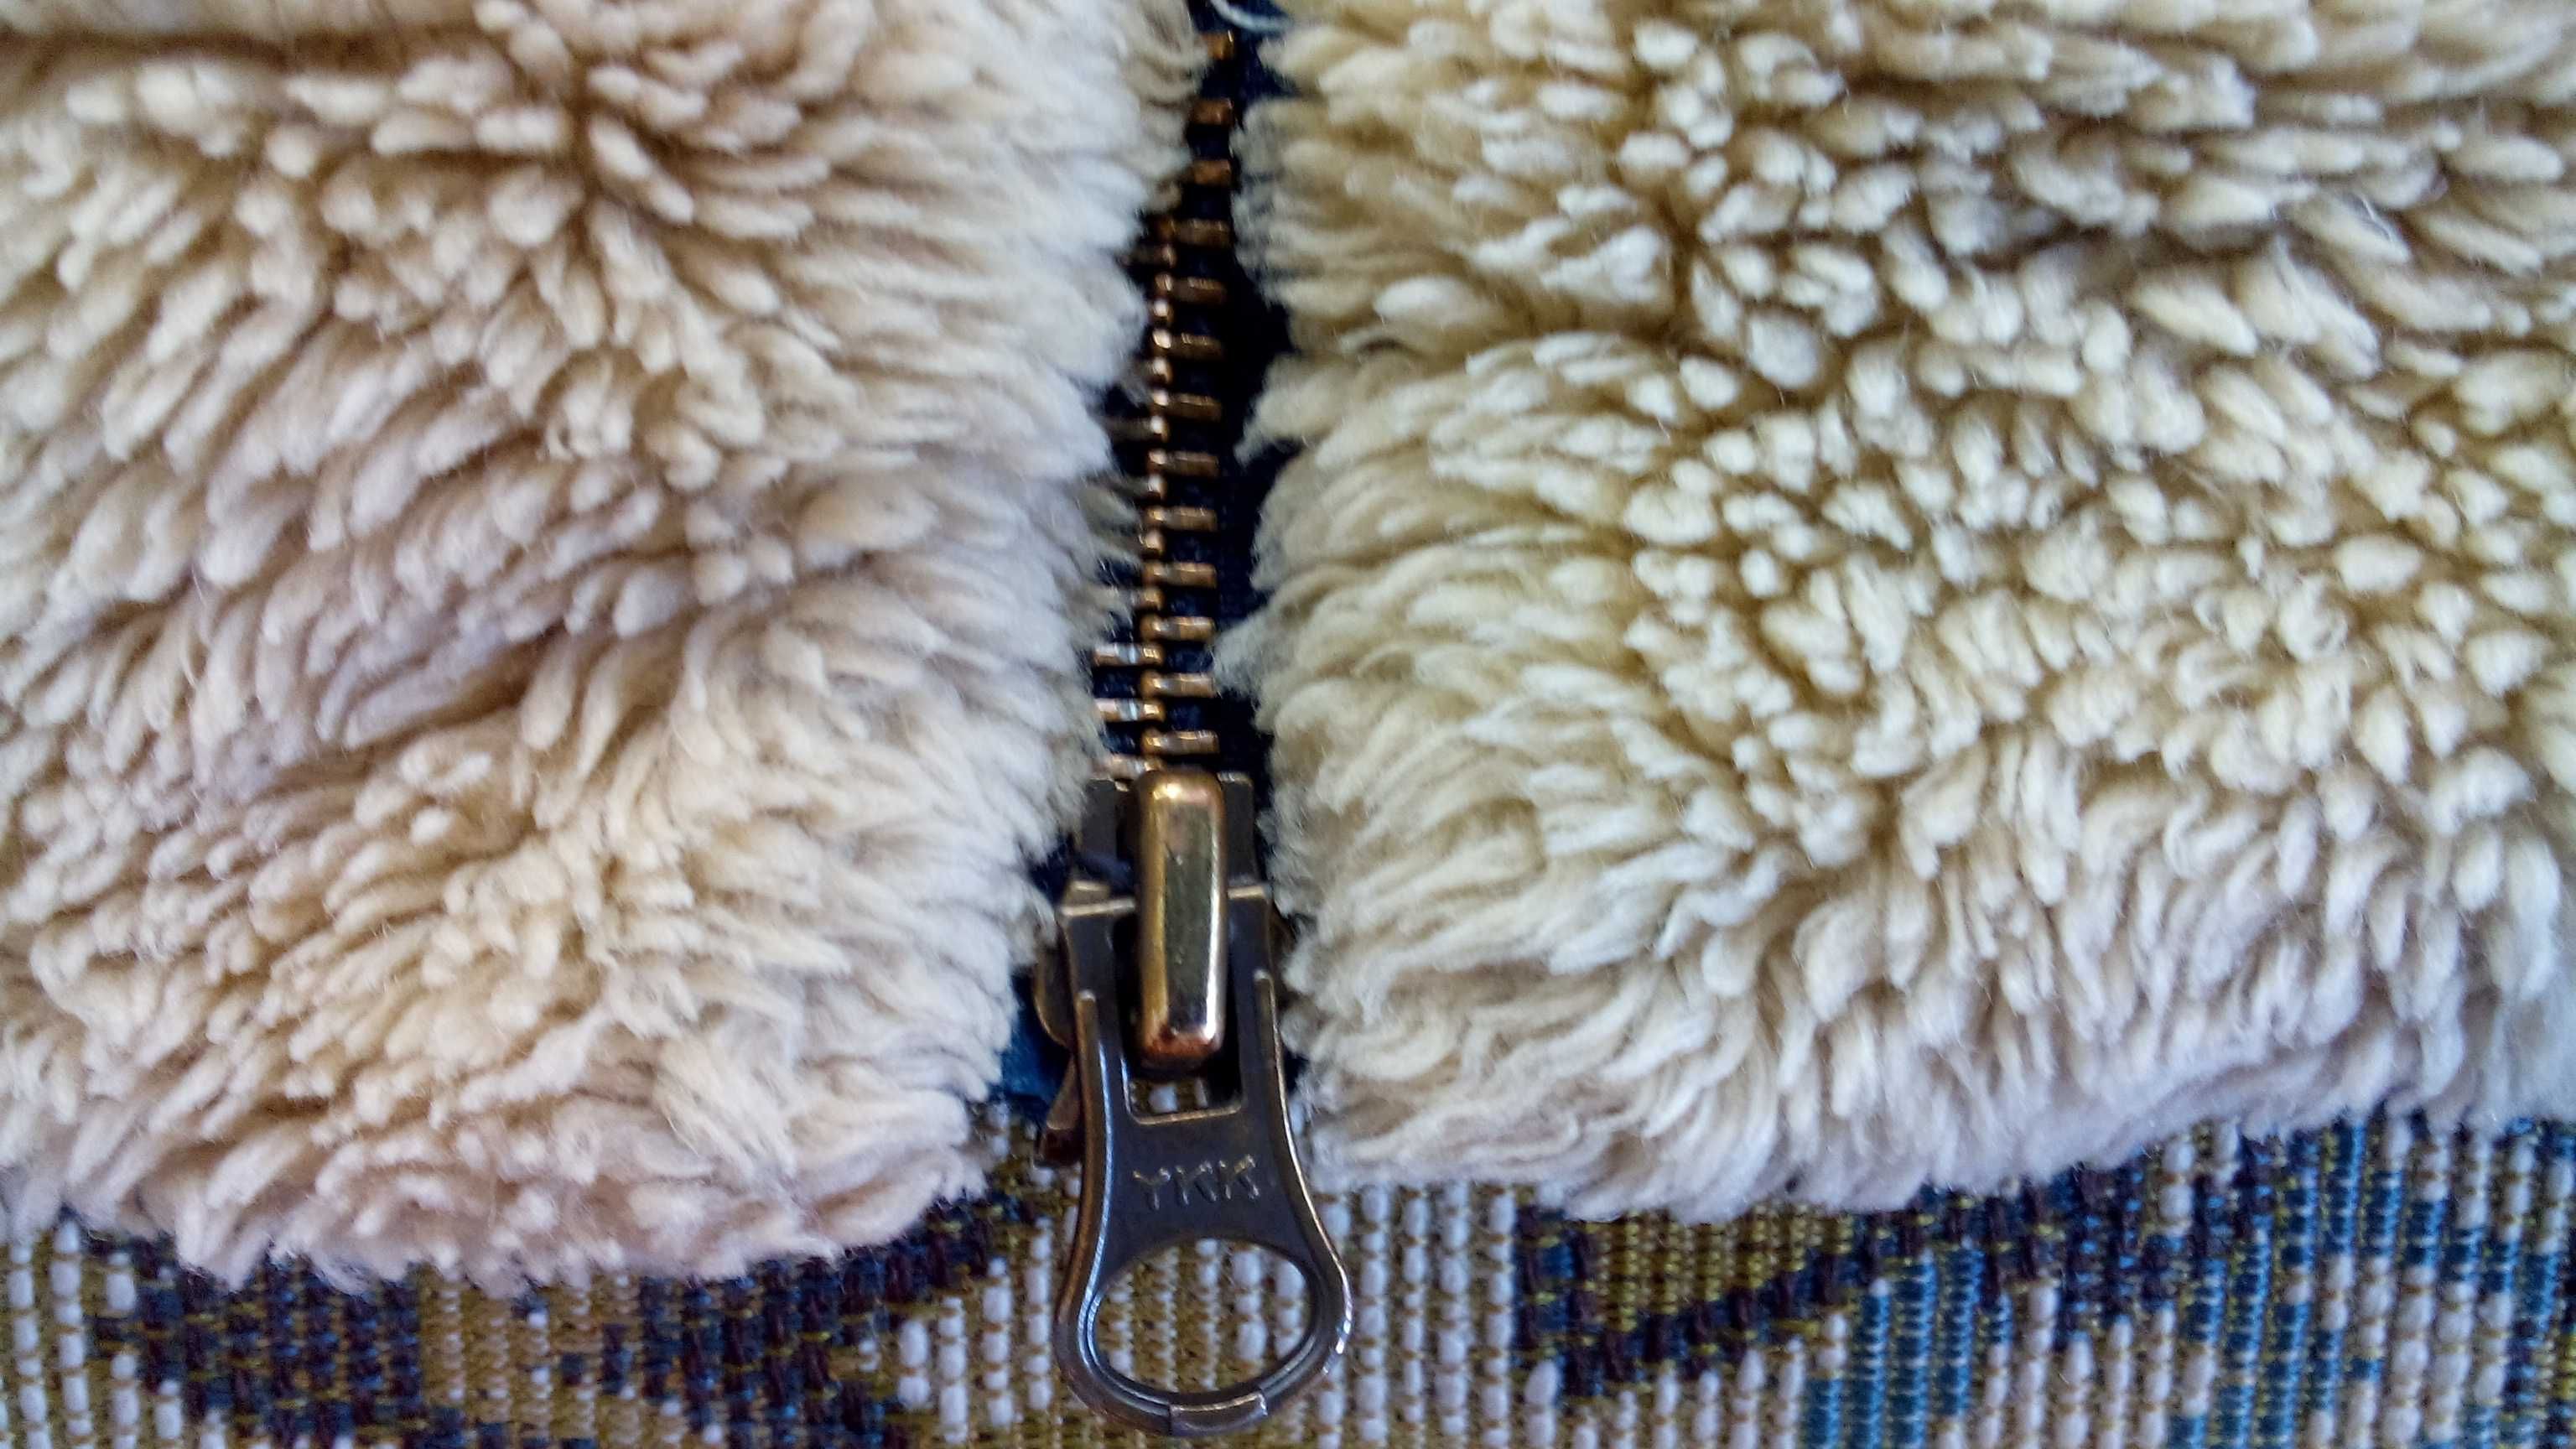 Куртка женская джинсовая Levi's Sherpa Levi Strauss & Co. размер L